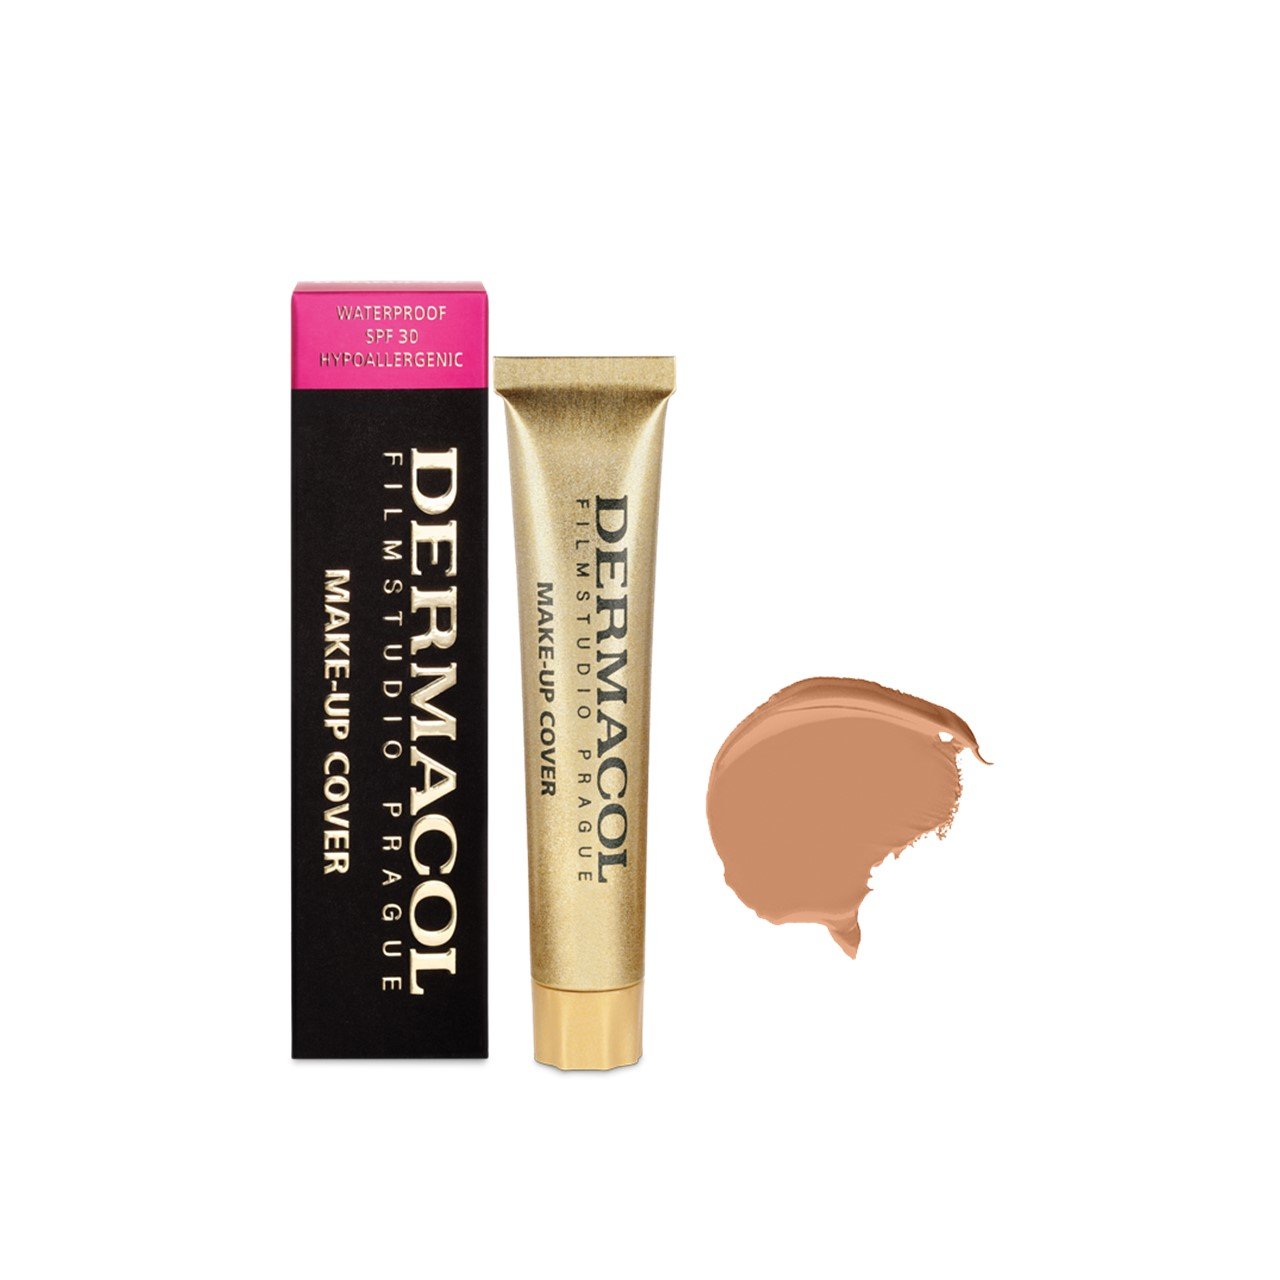 Dermacol Make-Up Cover Foundation SPF30 222 30g (1.06oz)